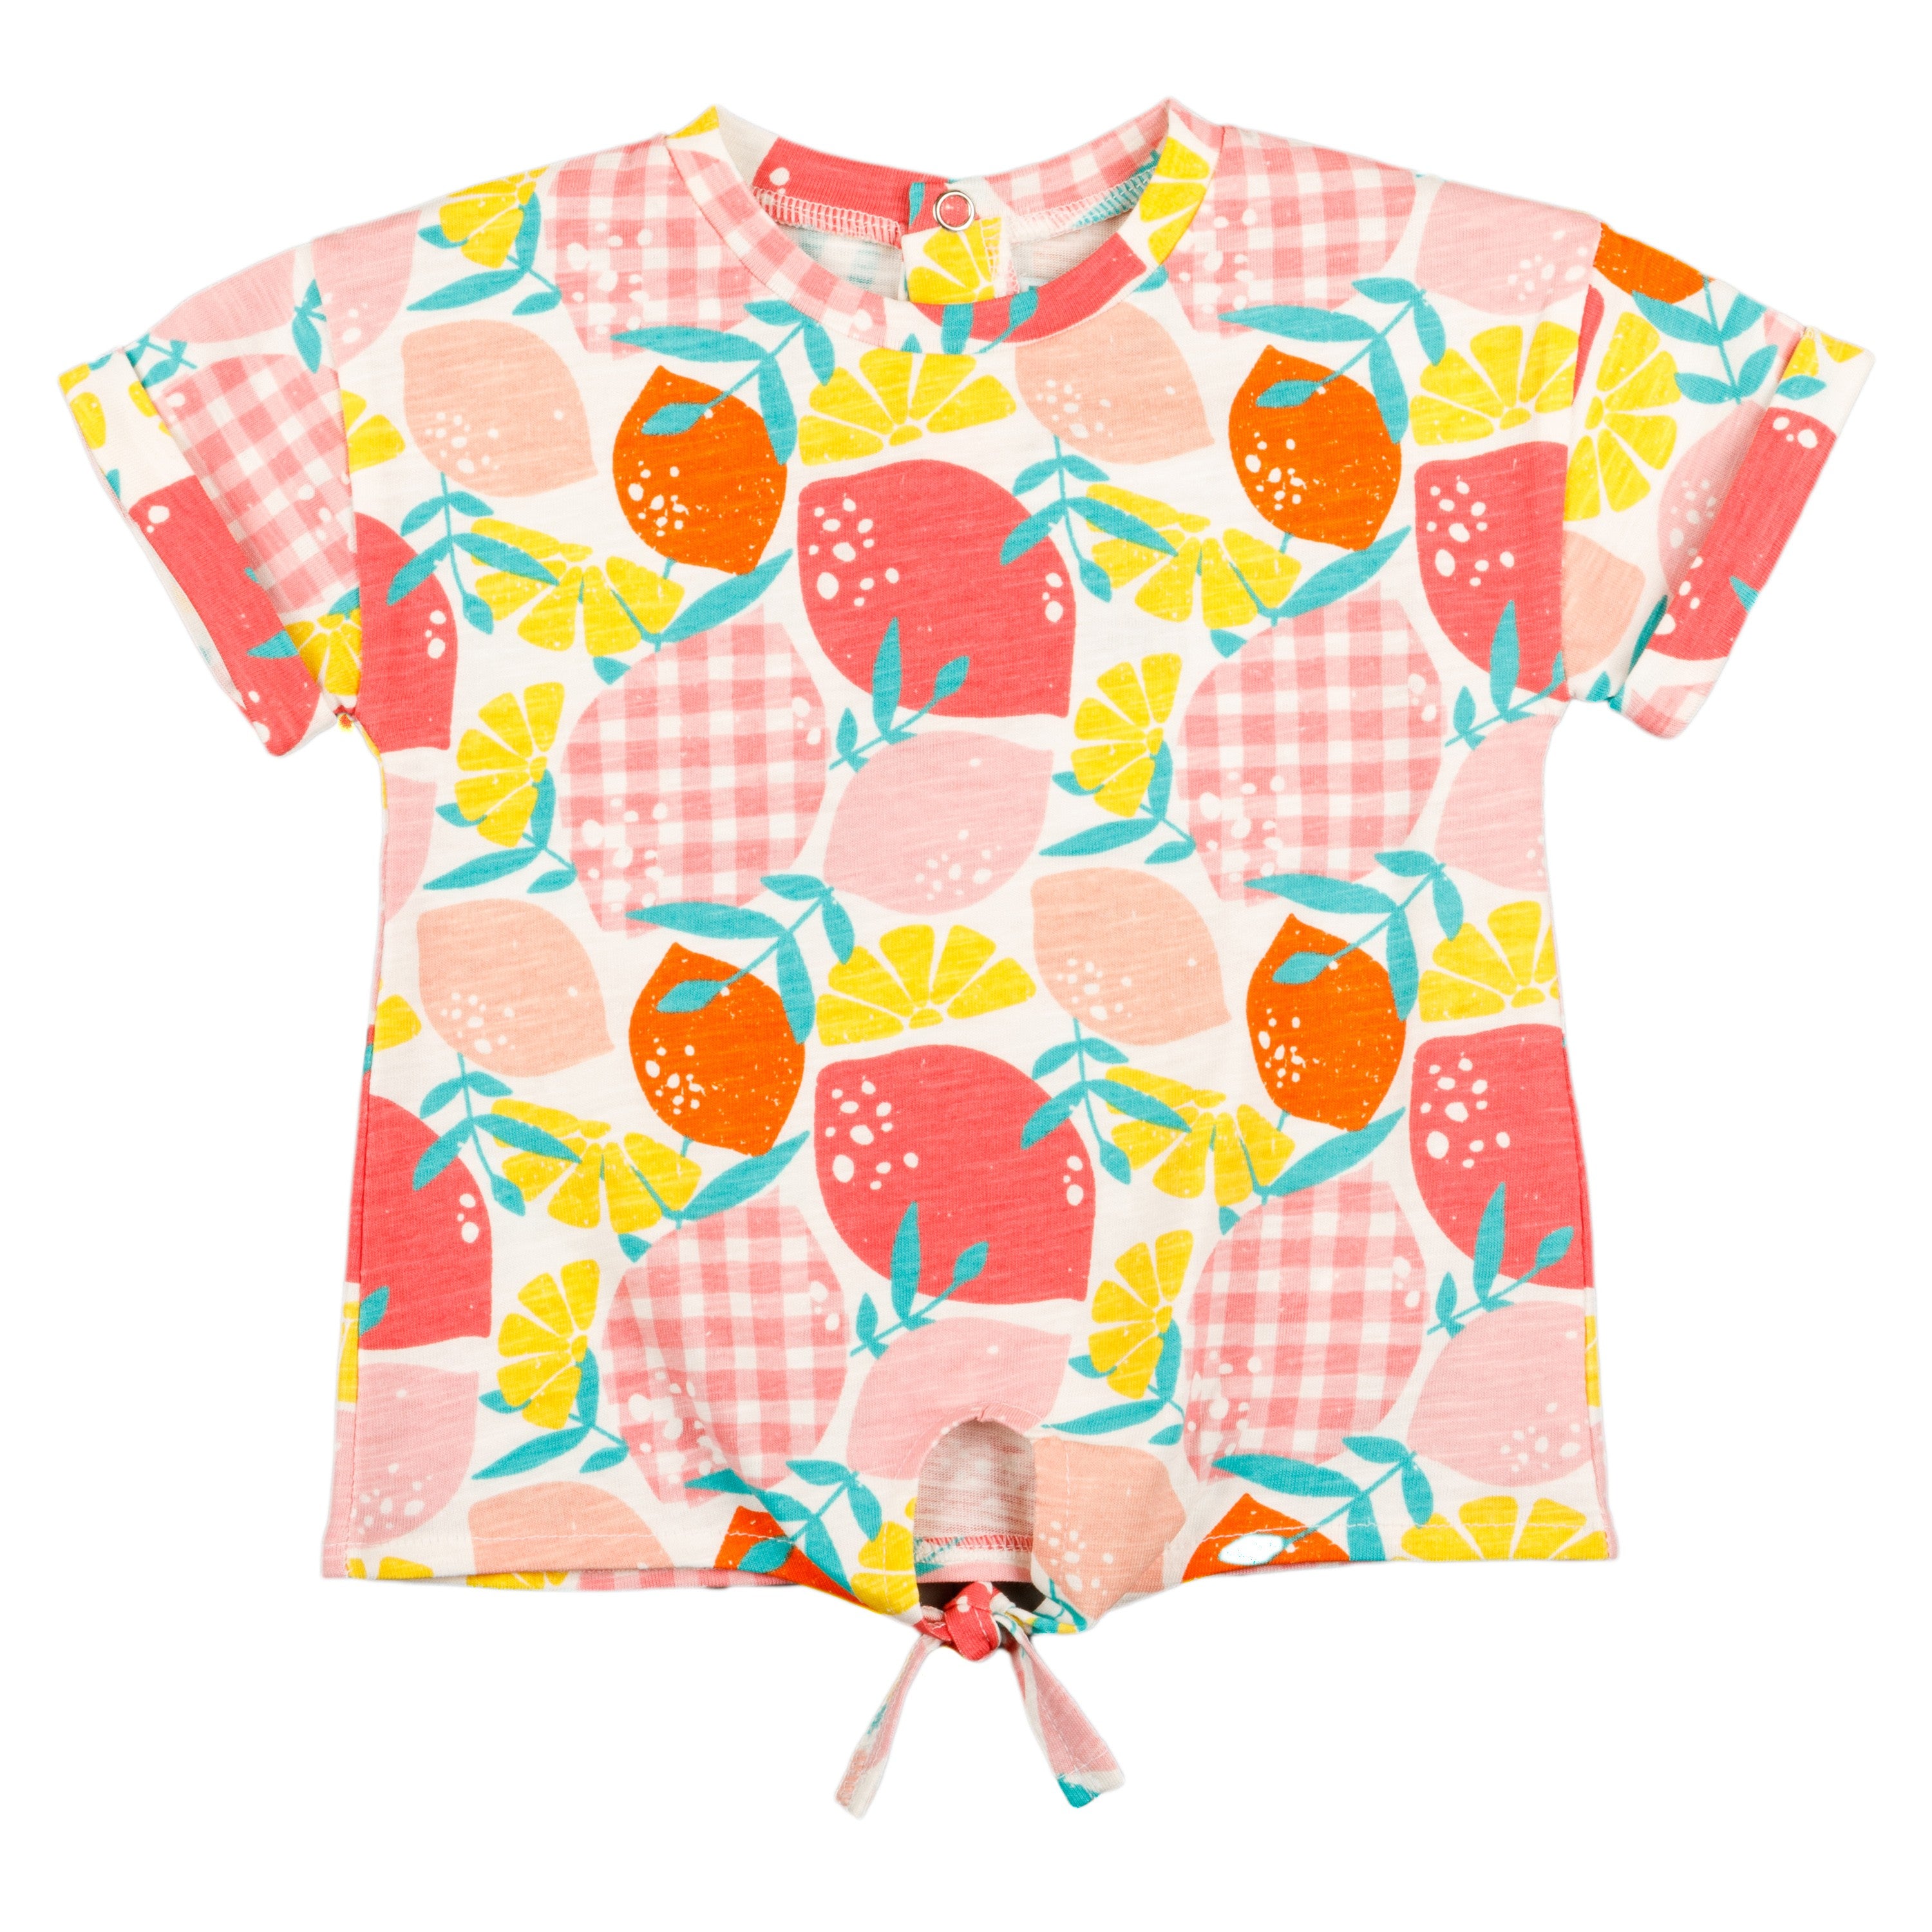 Camiseta de bebé estampada VERANO/Outlet